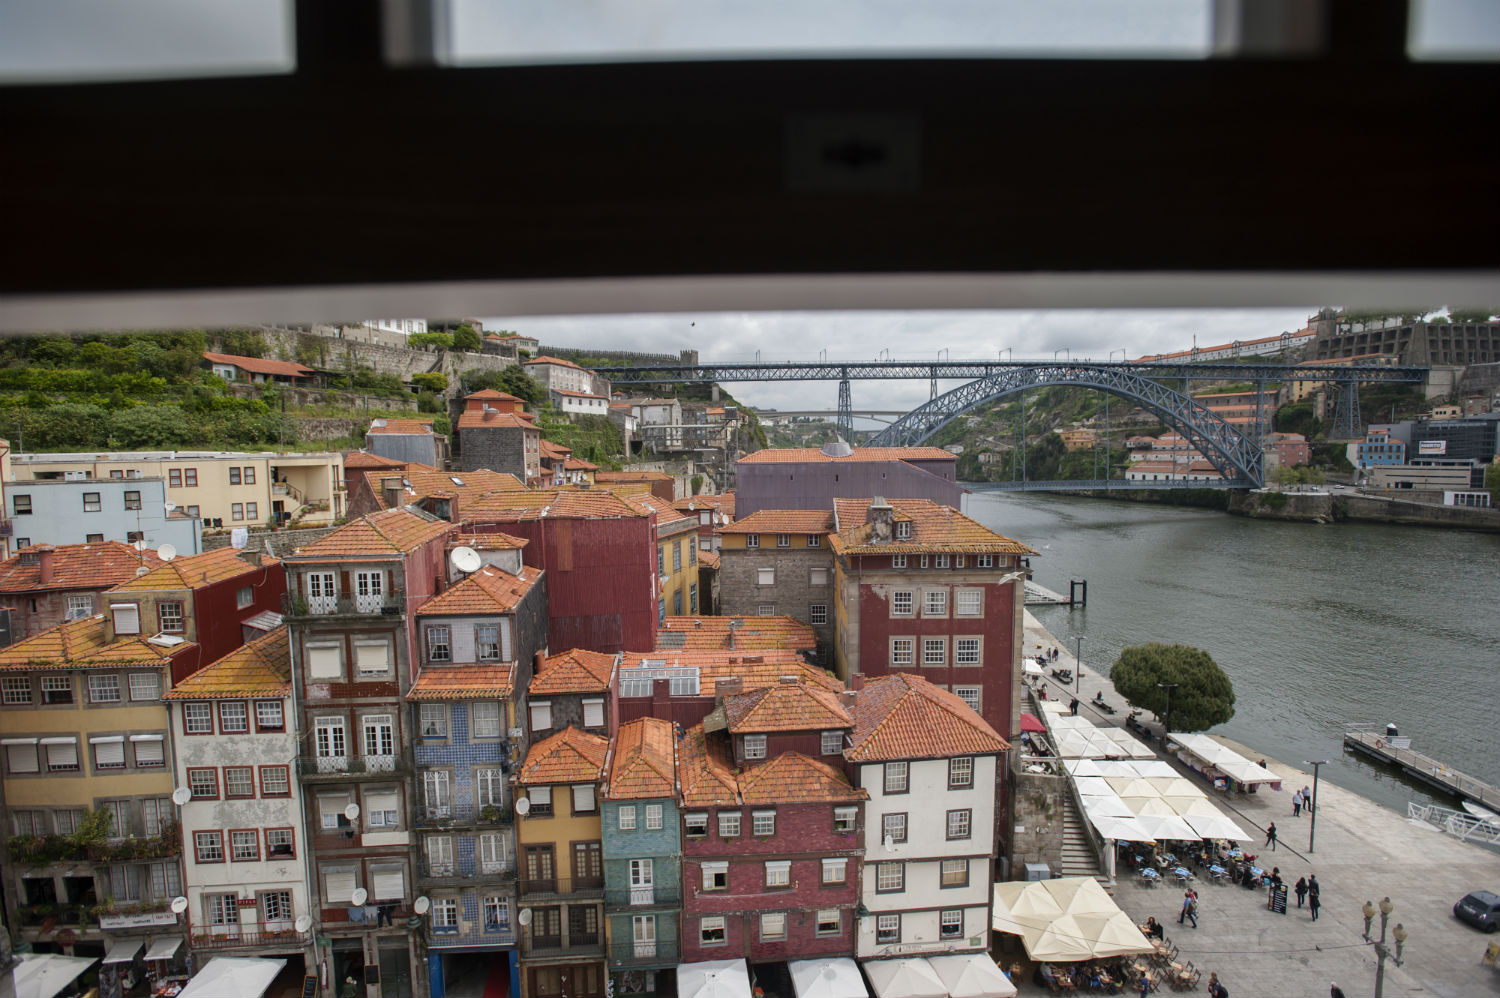 Premiado projecto para dar a conhecer o Porto a turistas invisuais